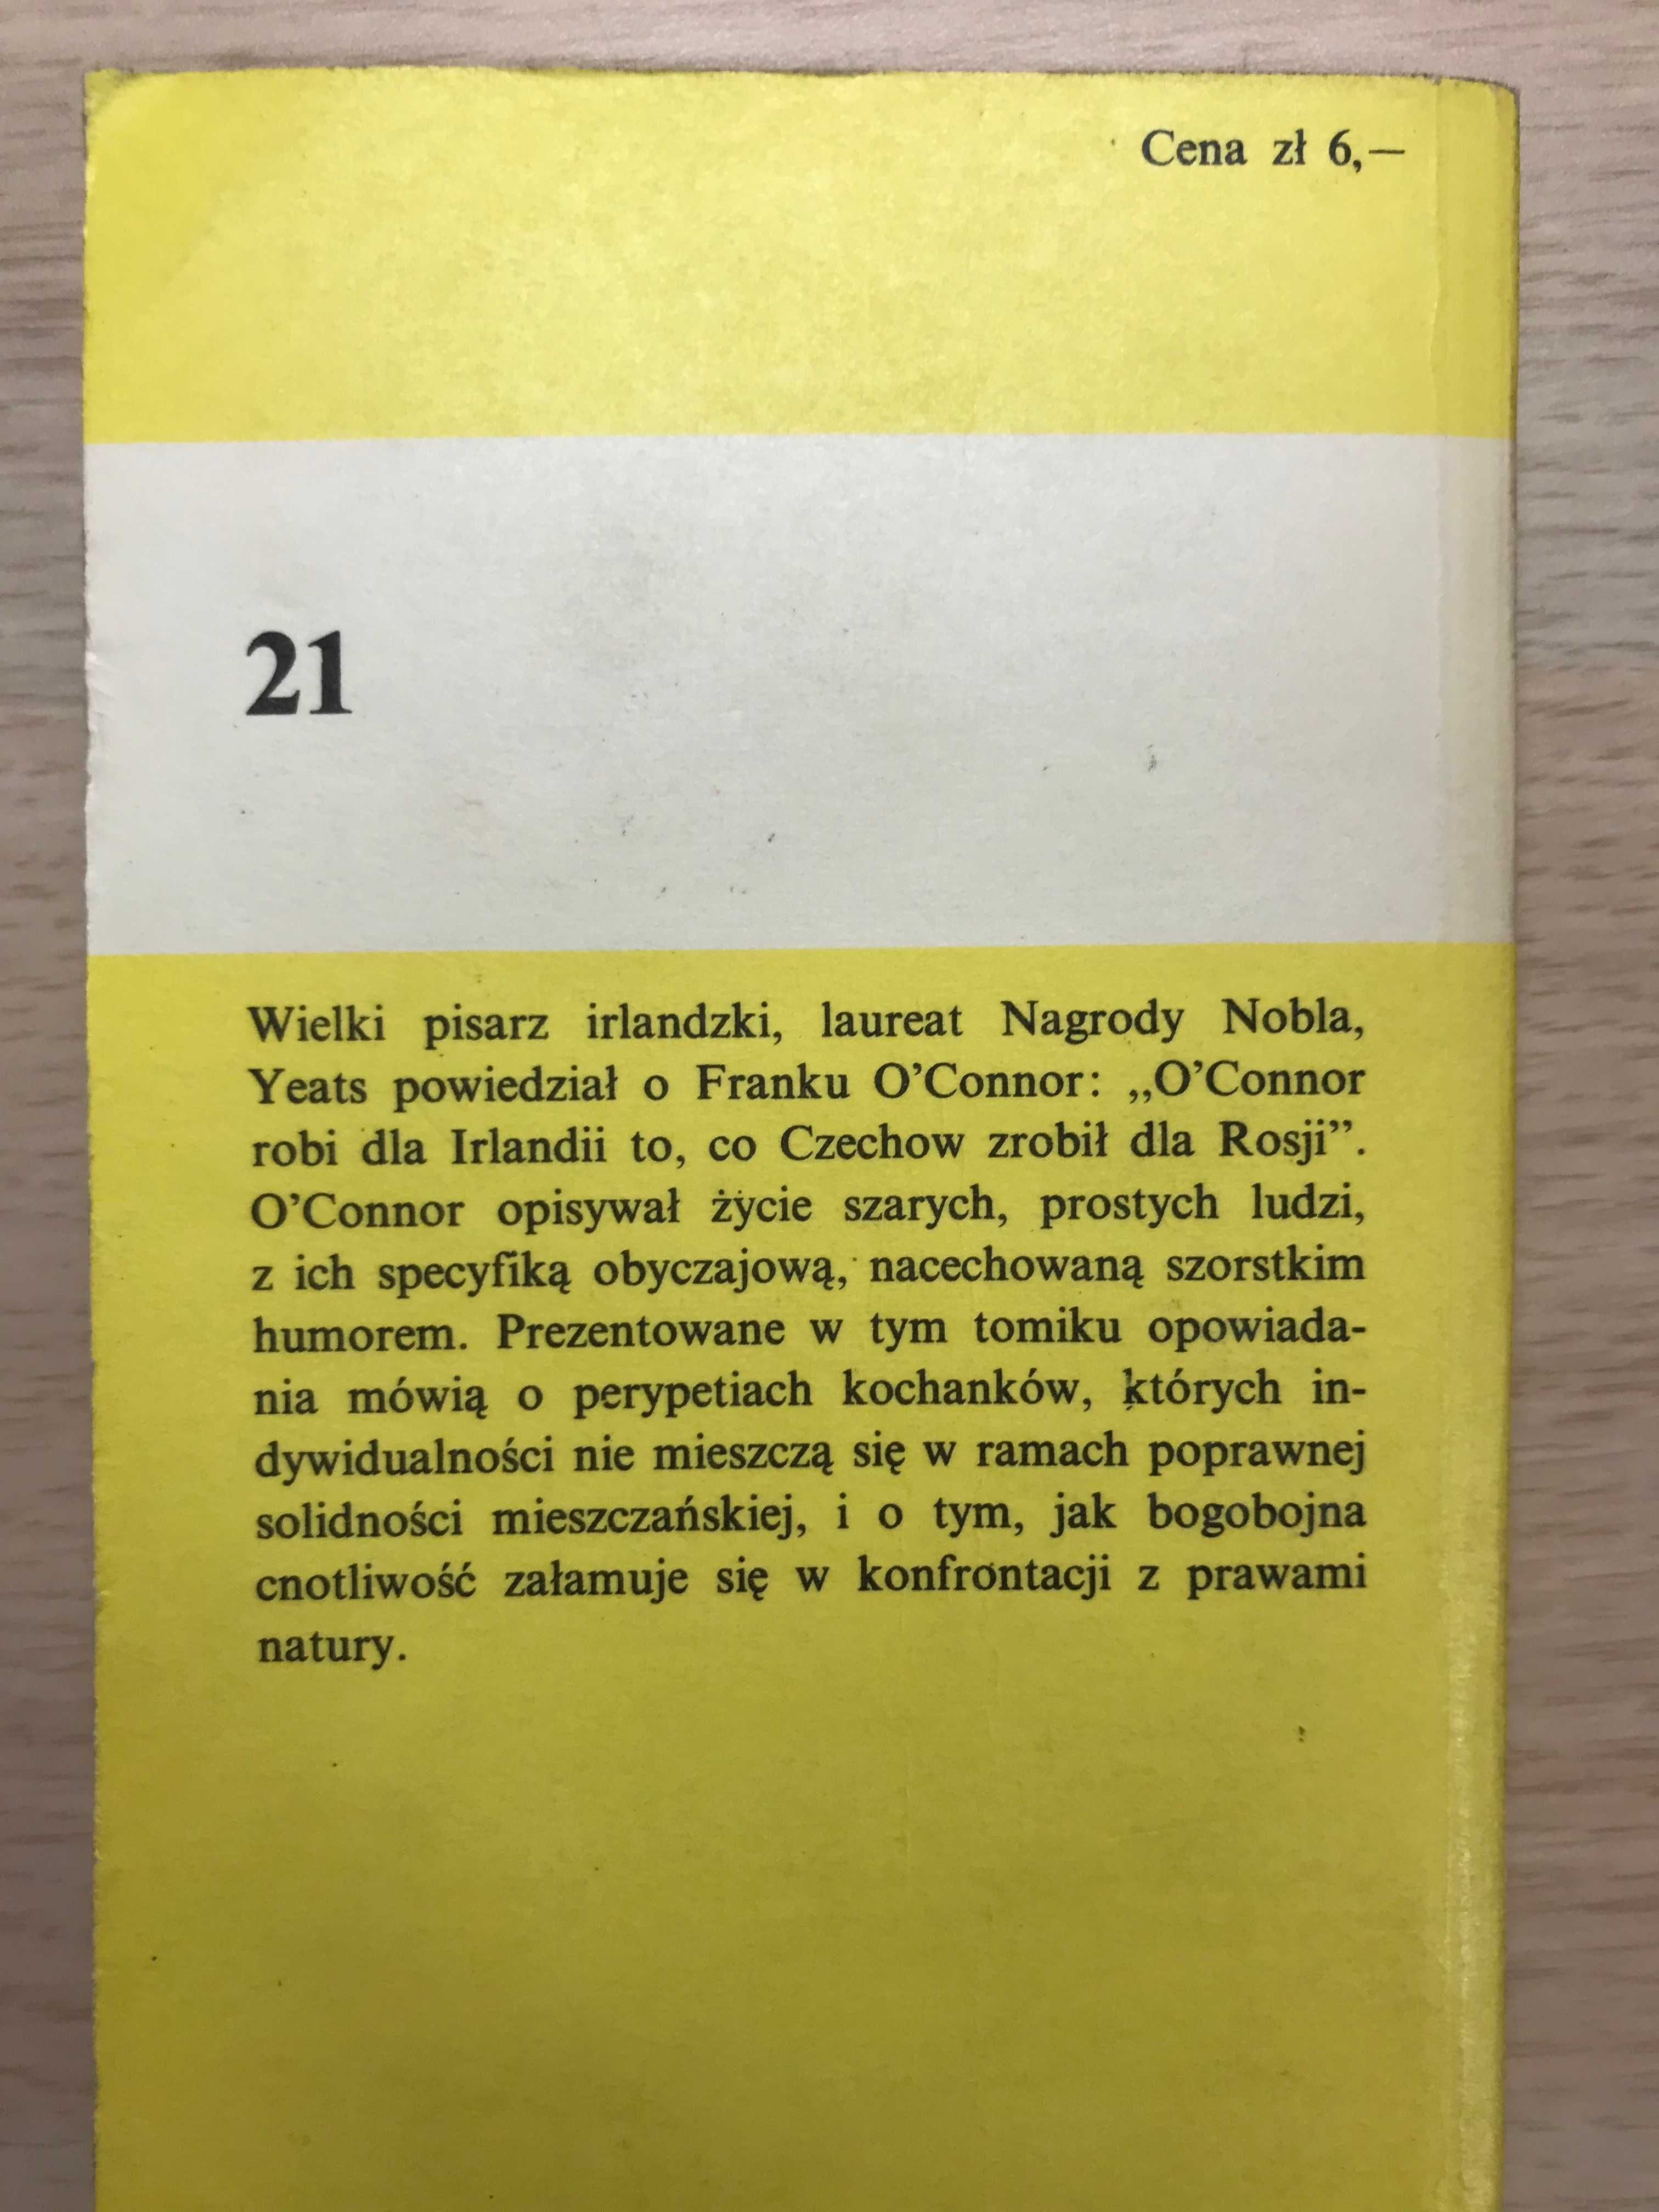 /Literatura kobieca, romans/ Frank O'Connor - Prawdziwy mężczyzna